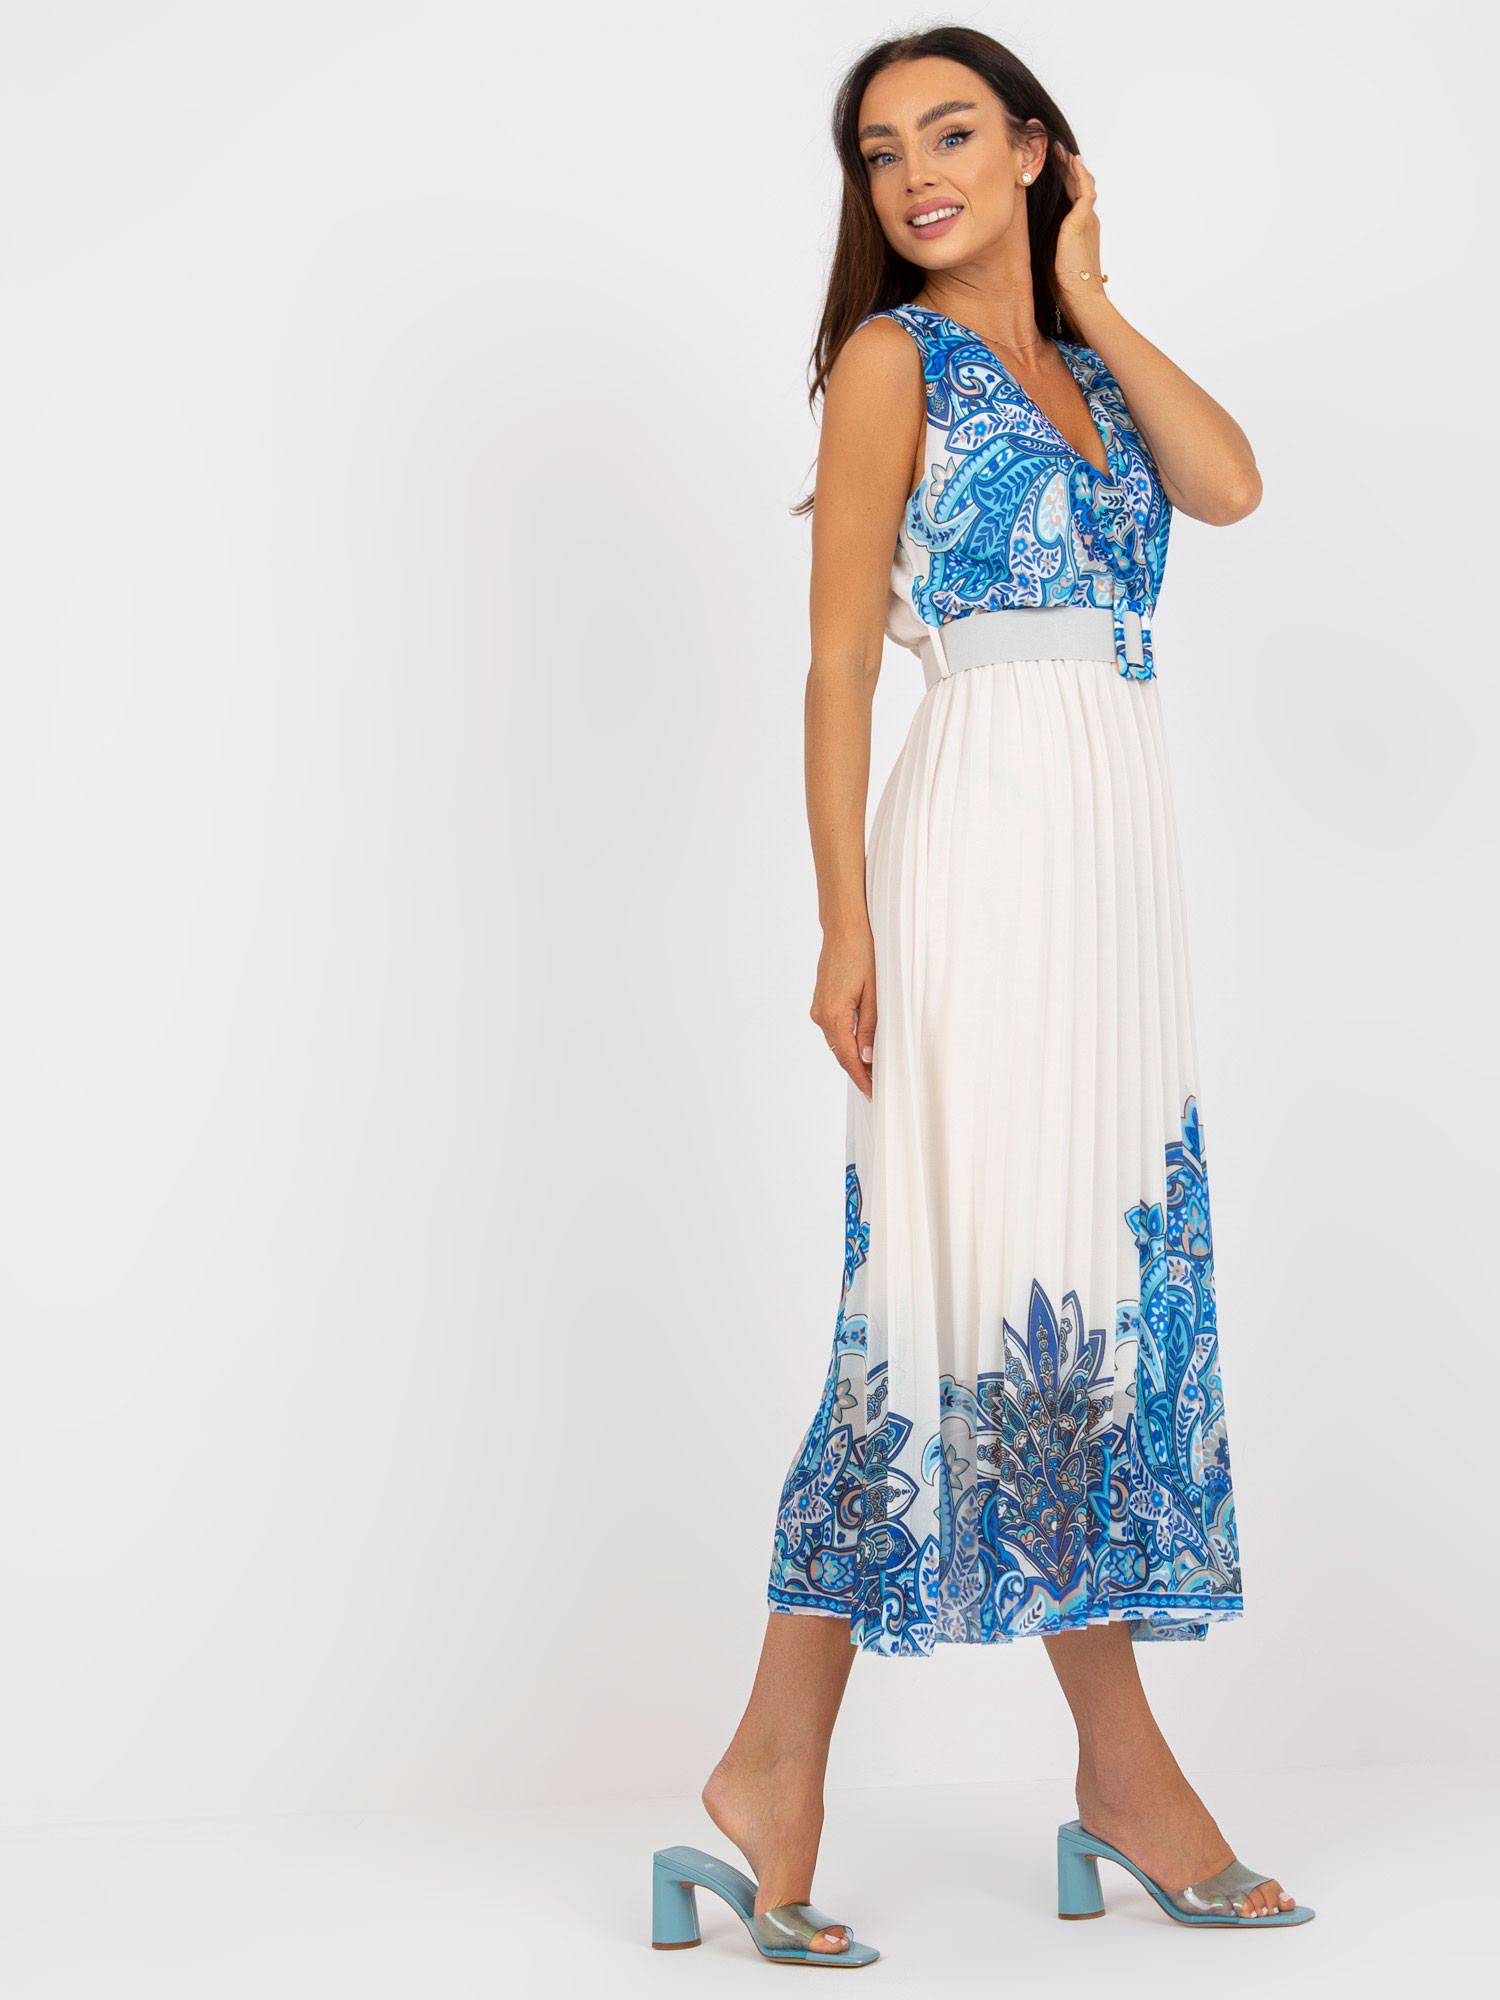 Dámské šaty DHJ SK 13128 bílé a modré - FPrice Velikost: UNI